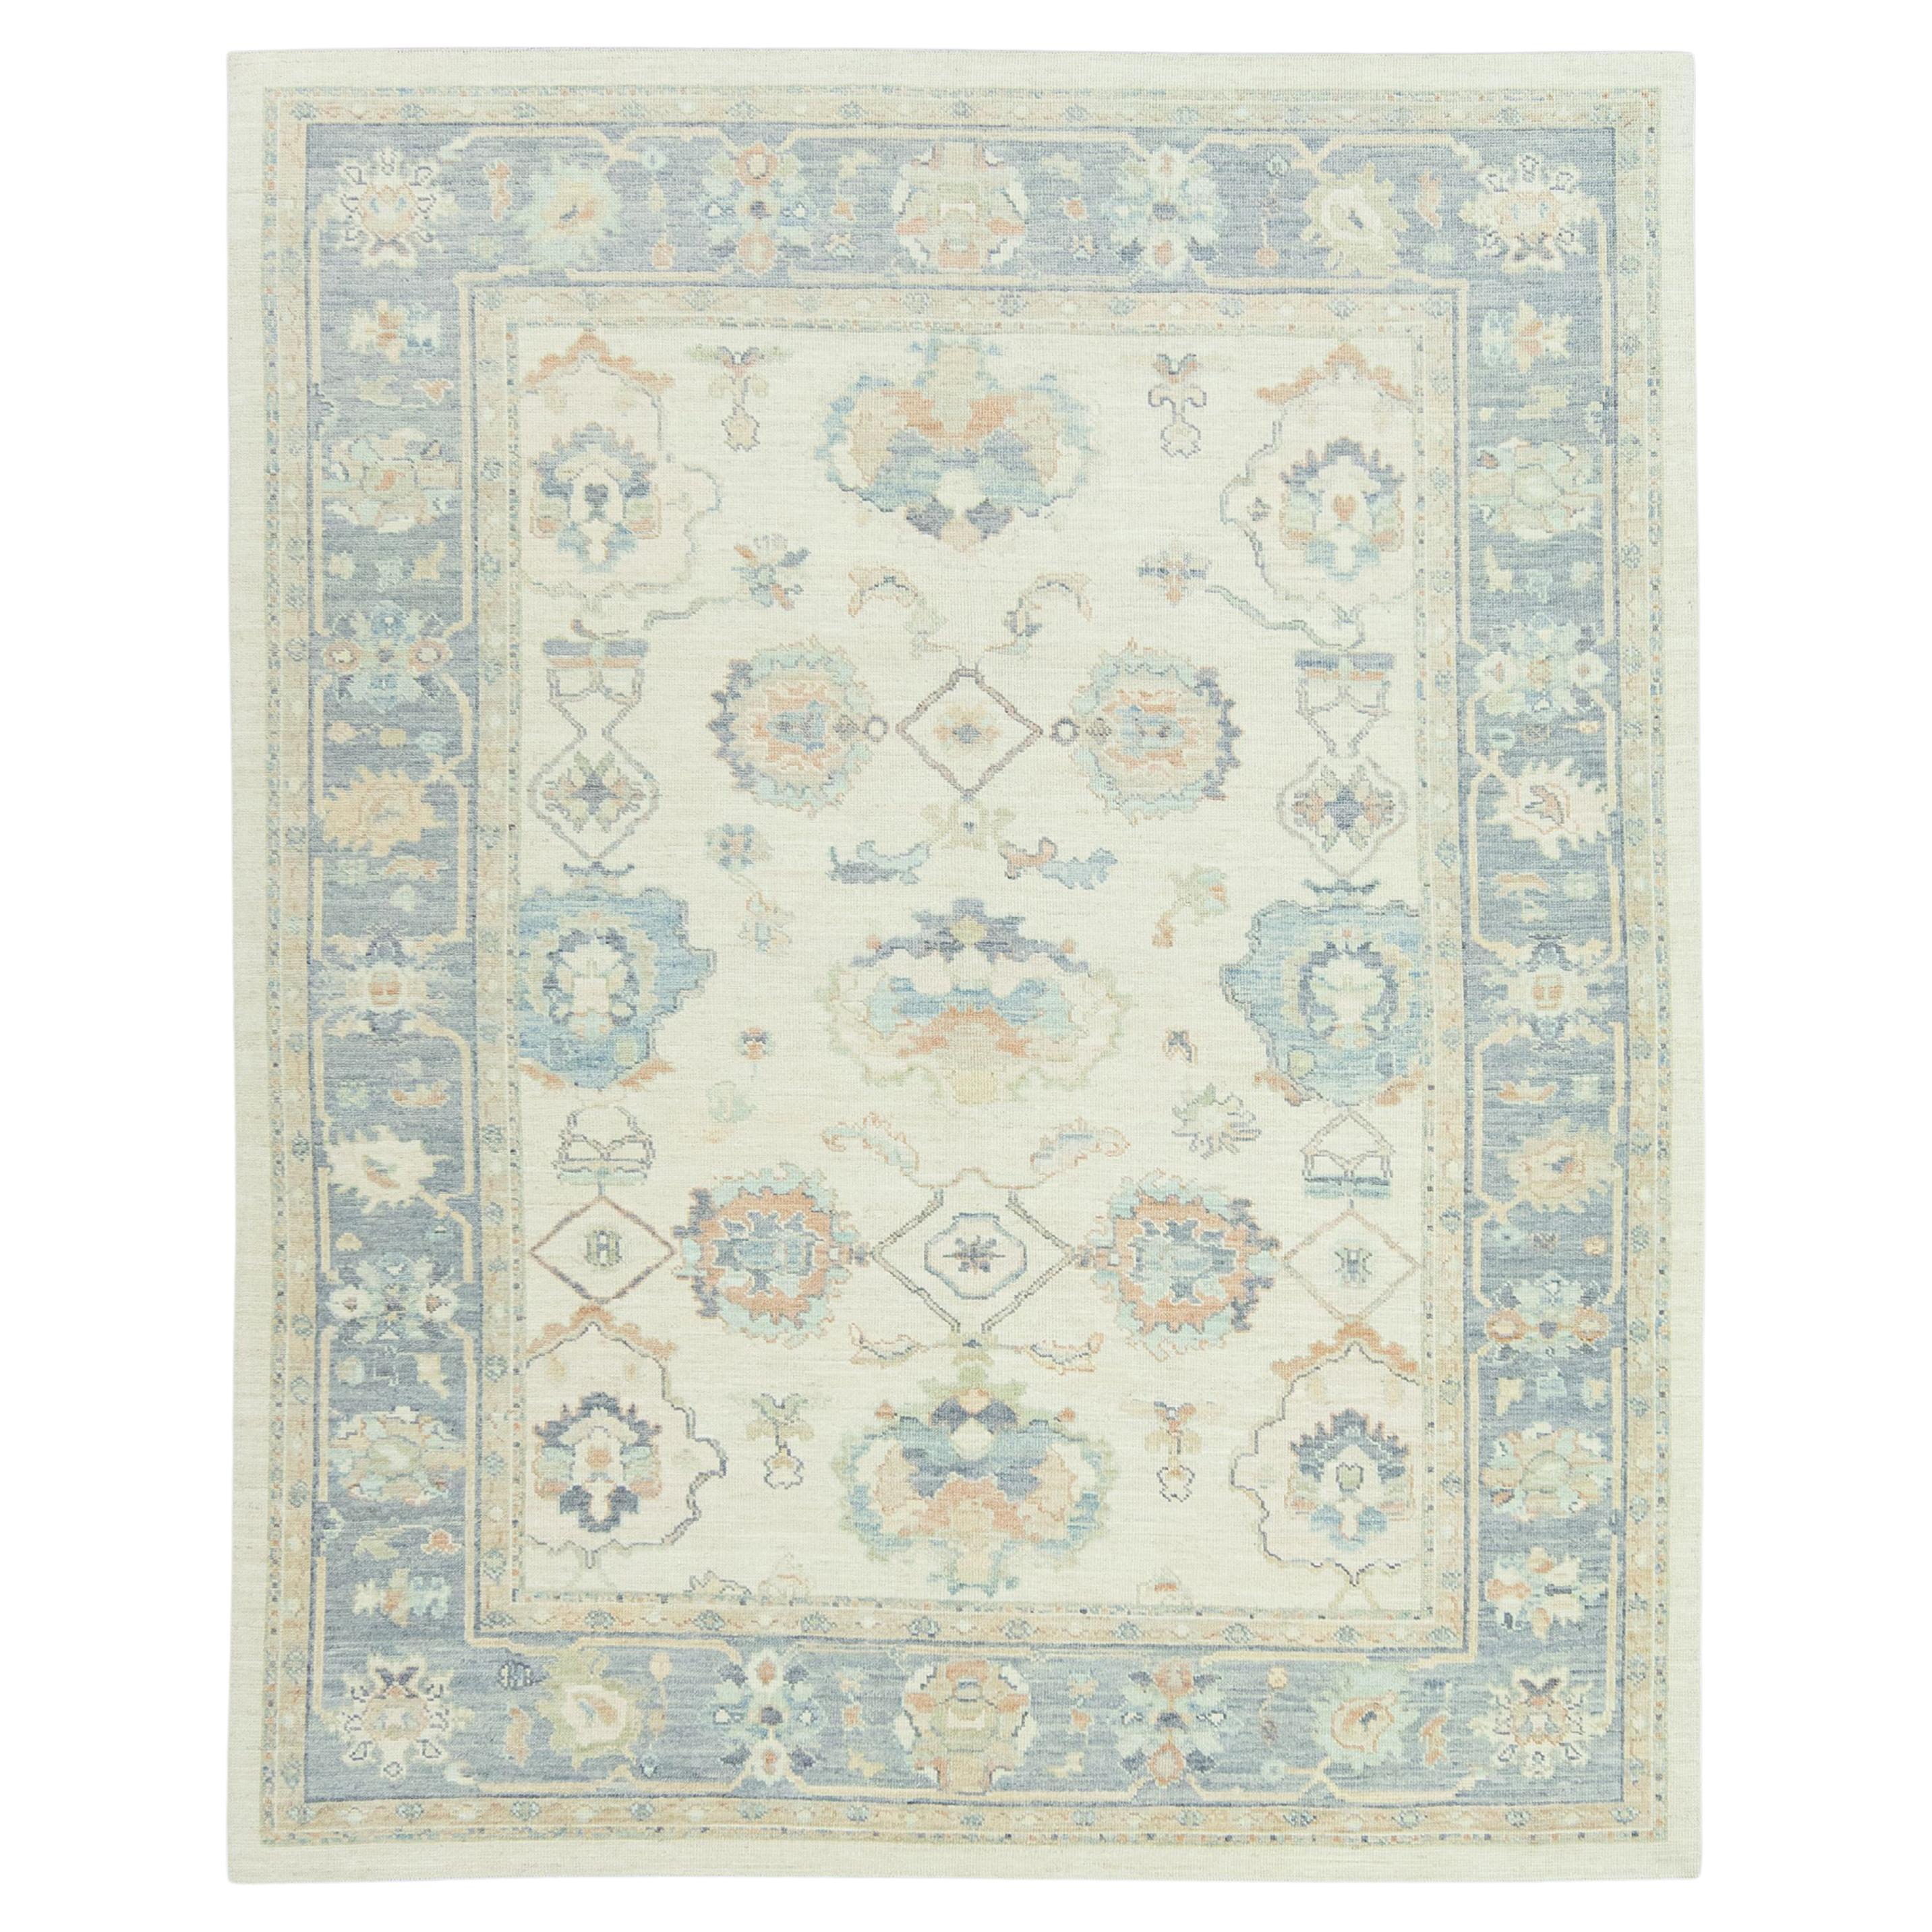 Handgewebter türkischer Oushak-Teppich aus Wolle 9'x 11'6"